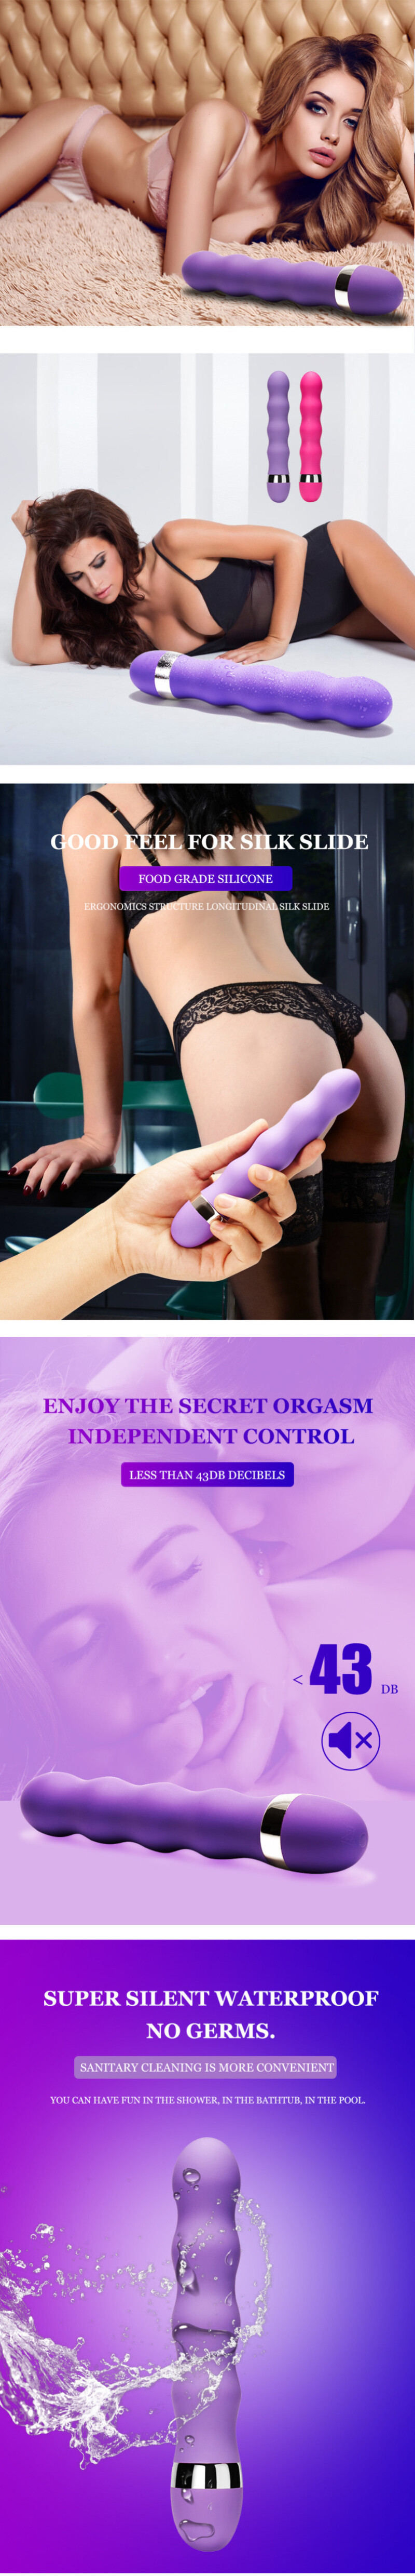 Vibratore Vaginale Multi-velocità Punto G, Coniglietto Per Il Clitoride E Plug Anale. Porno Anale. Sesso. Giocattolo Per La Masturbazione